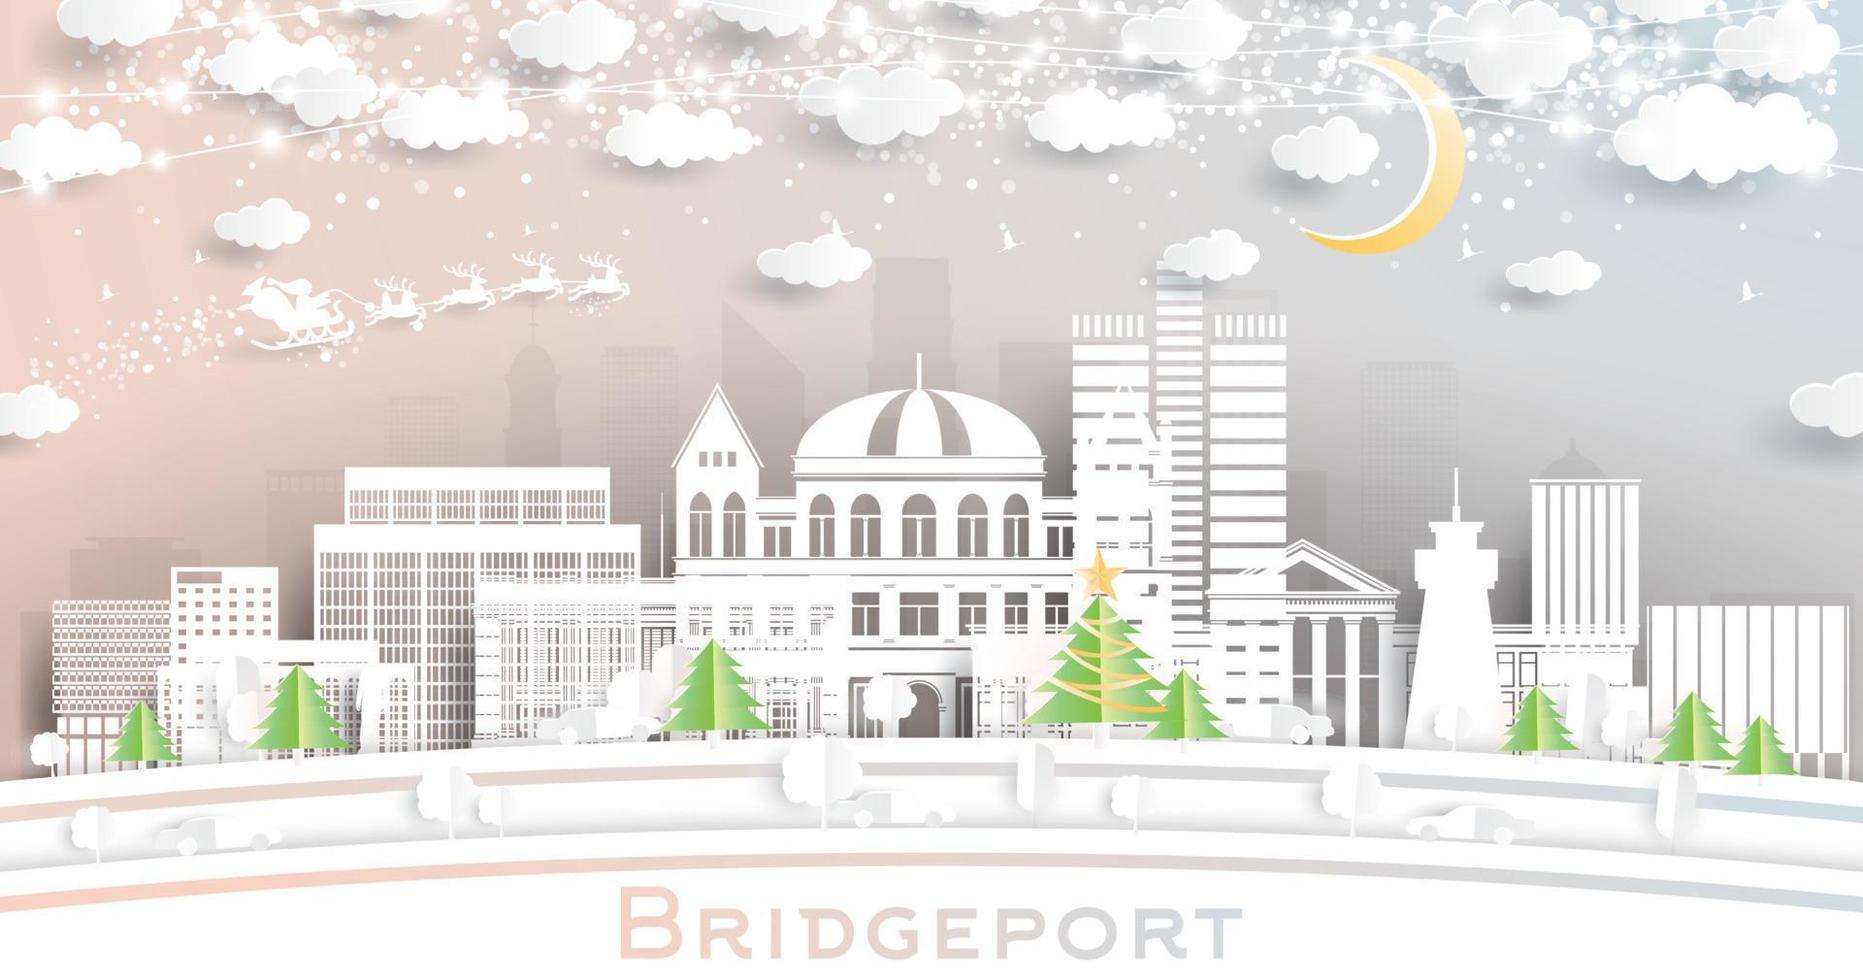 bridgeport connecticut stad horisont i papper skära stil med snöflingor, måne och neon krans. vektor